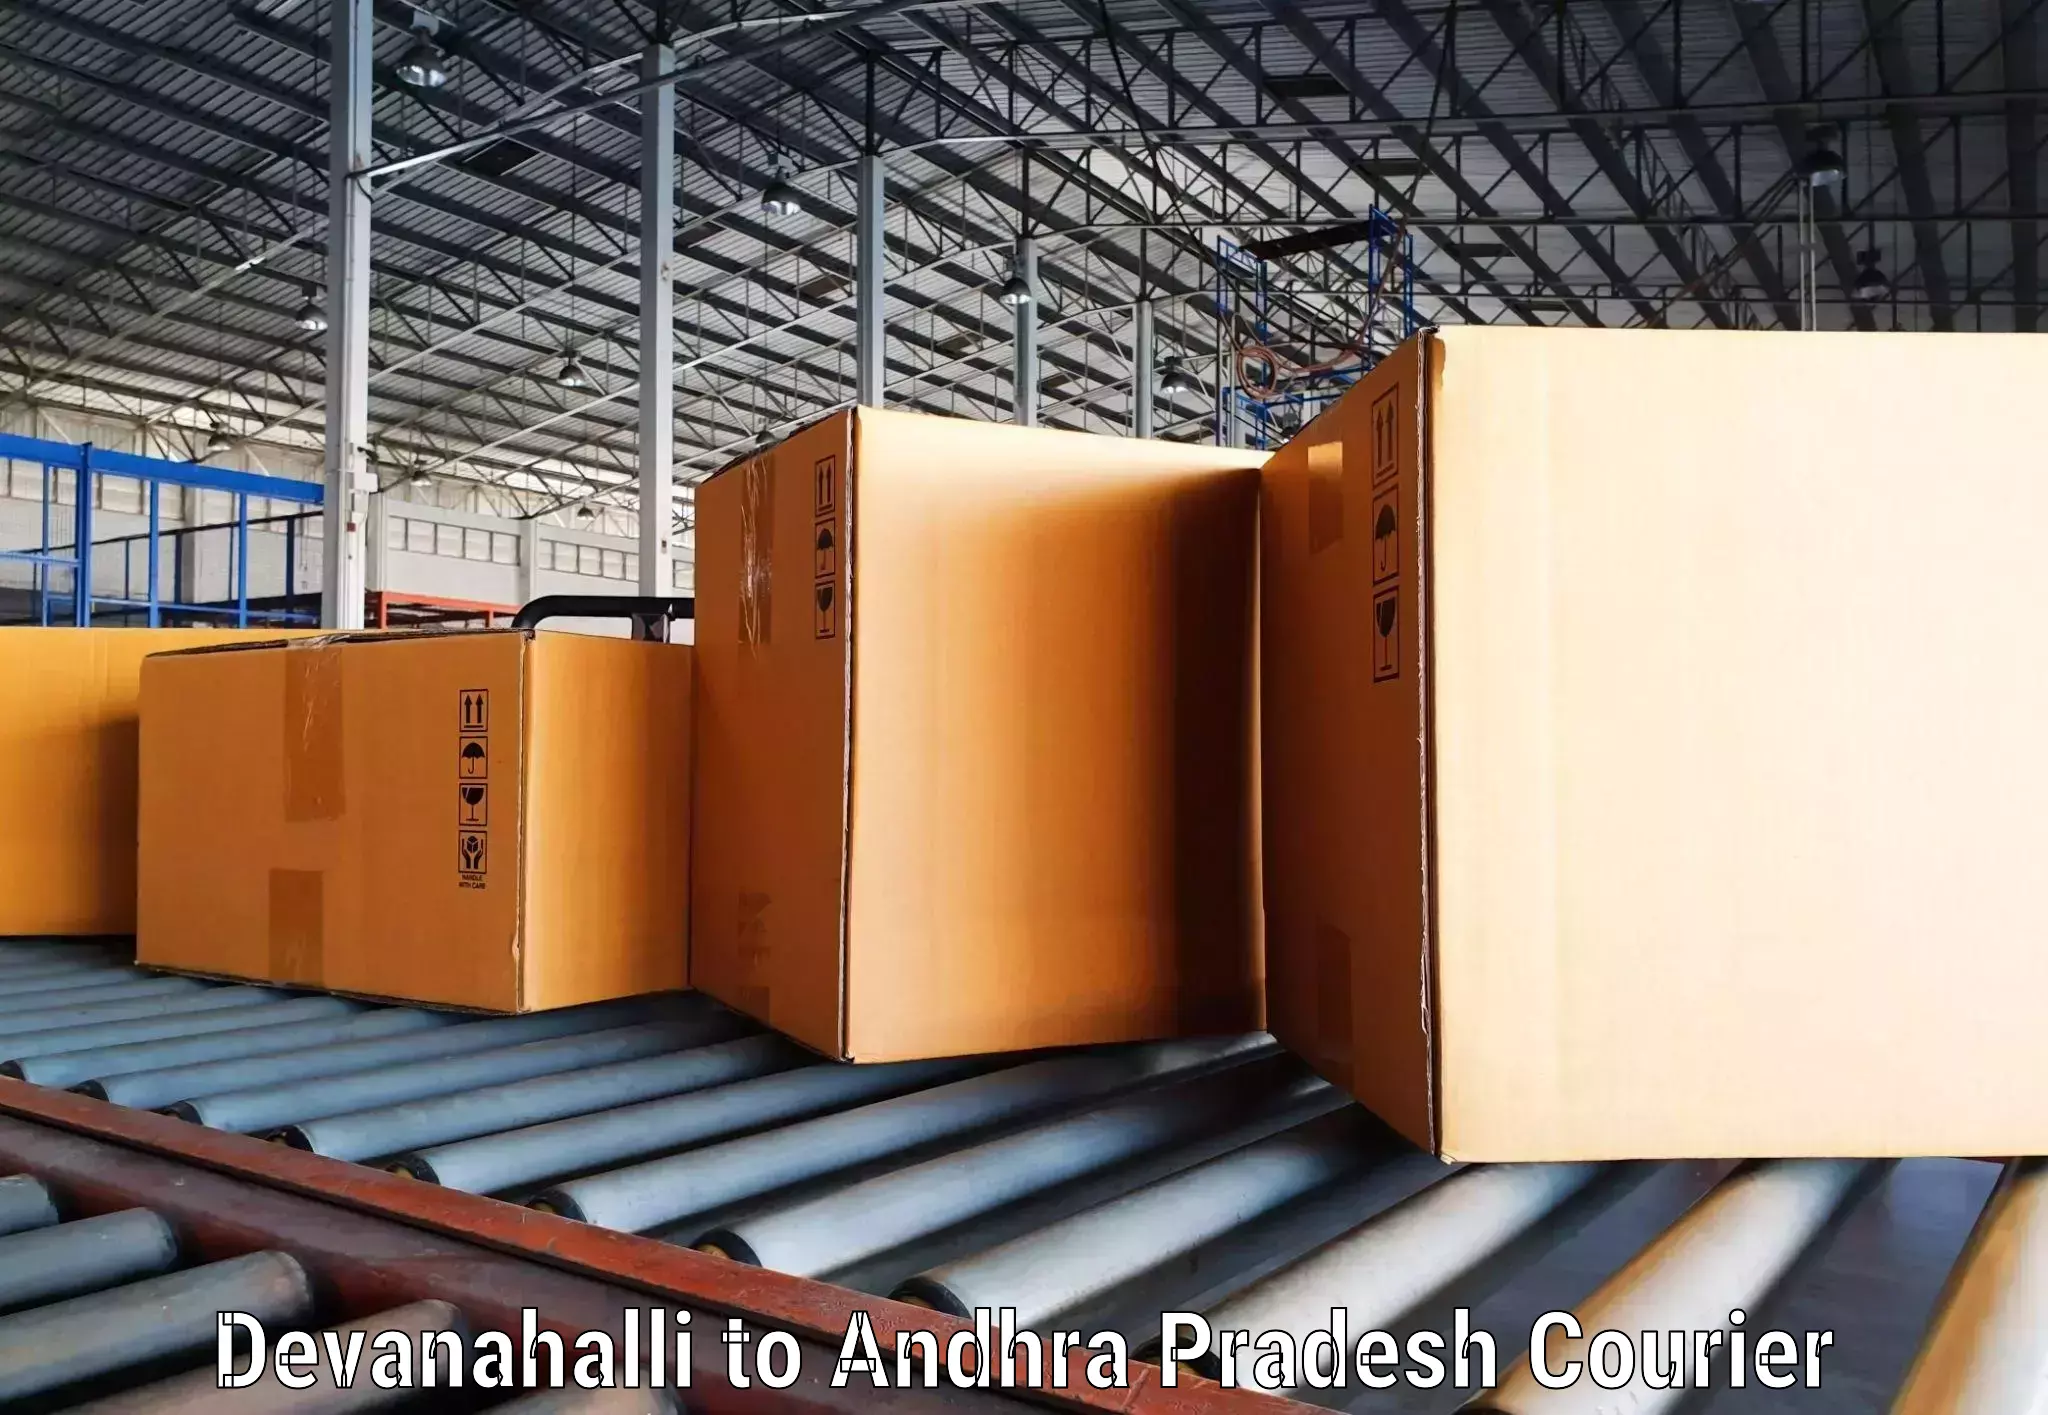 Express logistics providers Devanahalli to Narsapur